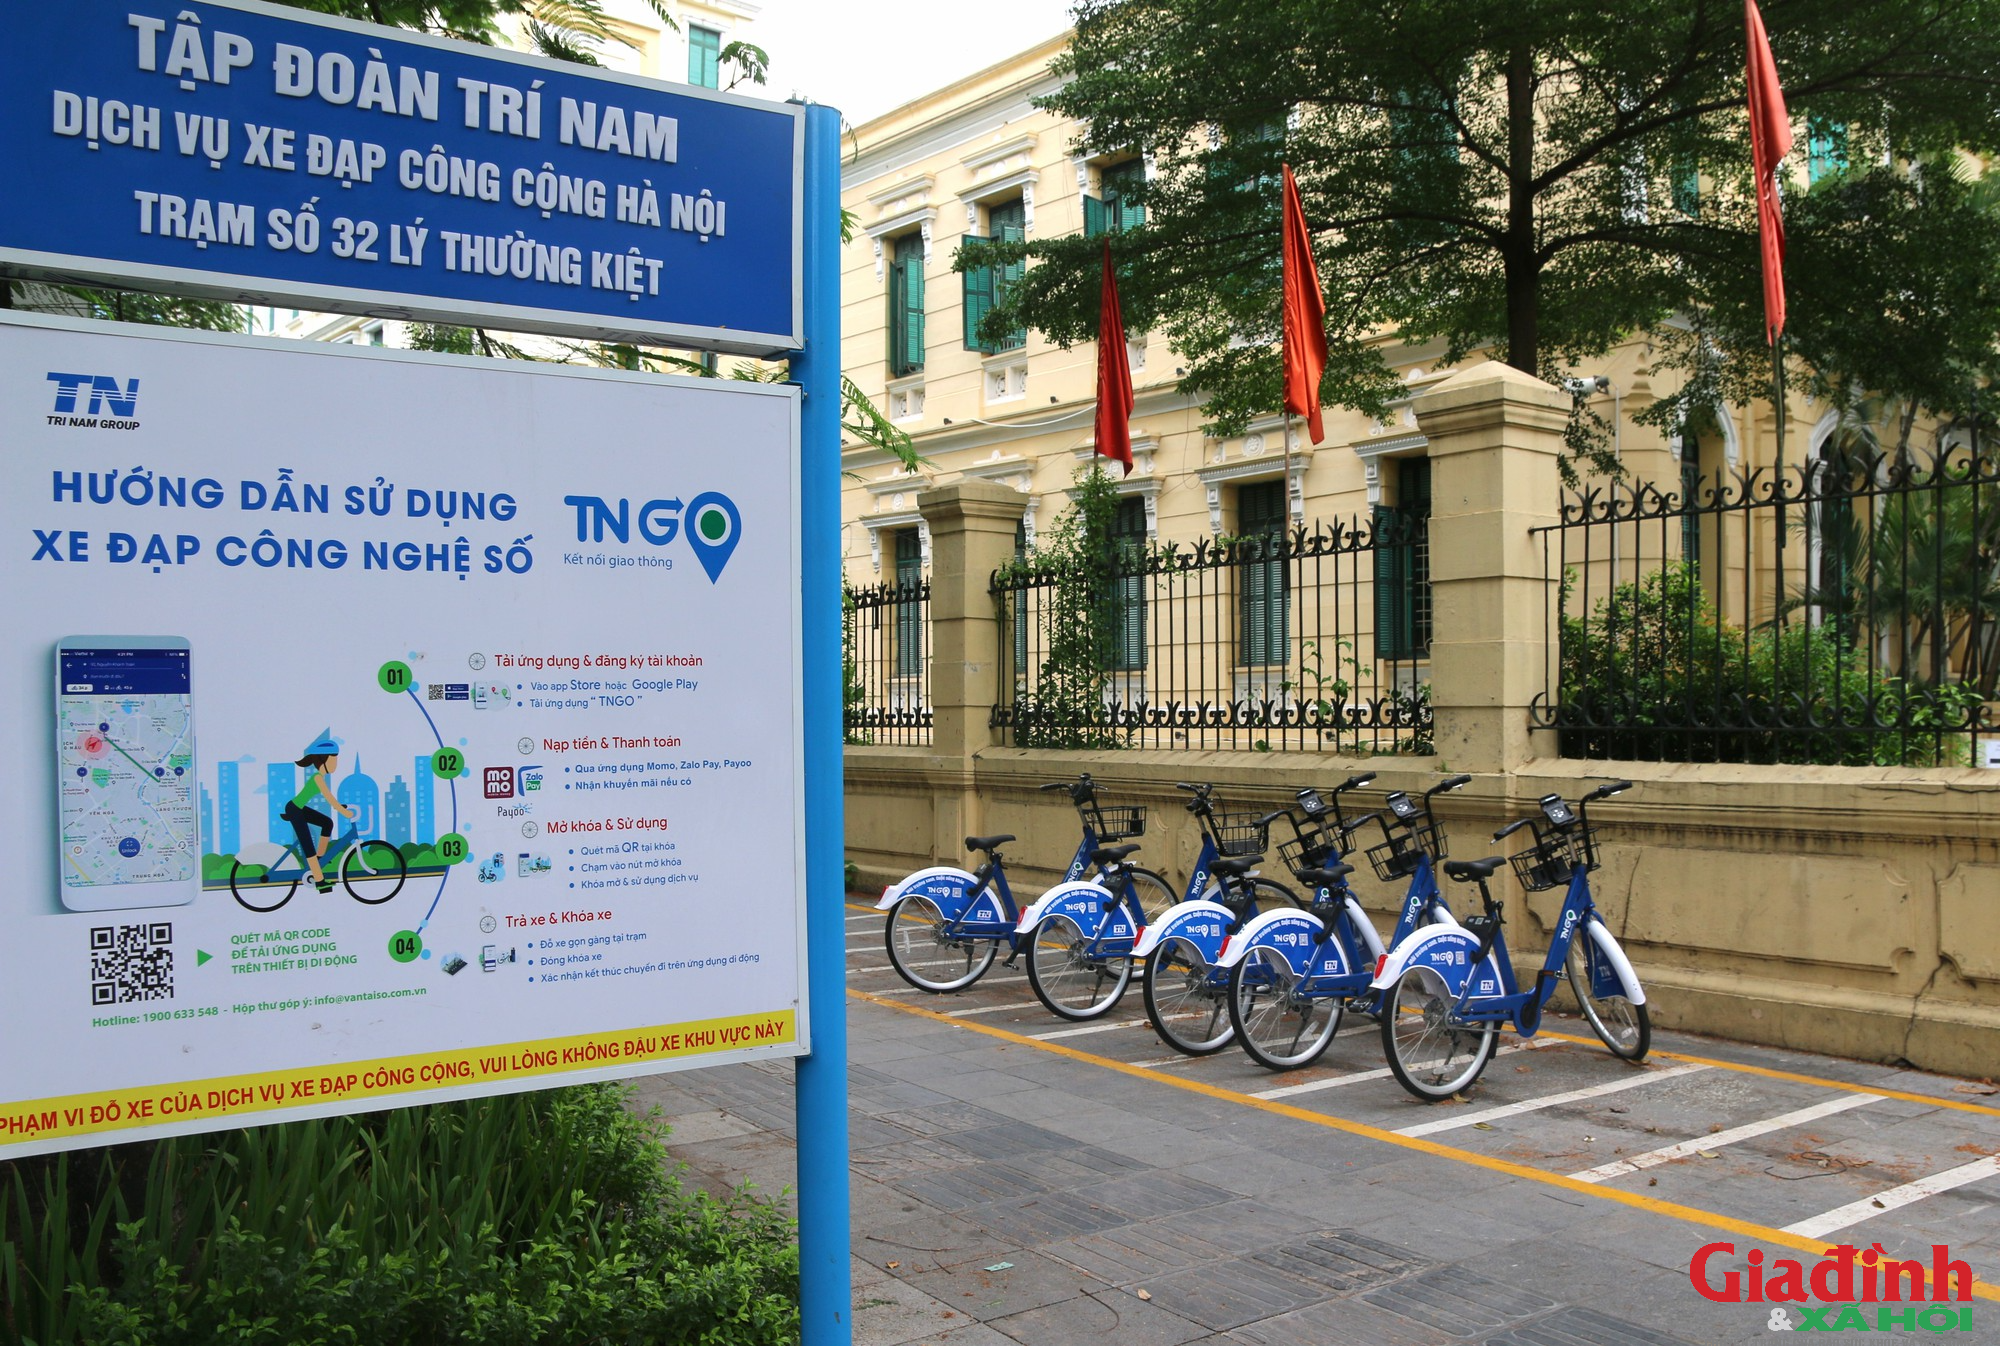 Dịch vụ xe đạp công cộng được triển khai tại Hà Nội và kỳ vọng thay đổi thói quen tham gia giao thông - Ảnh 1.